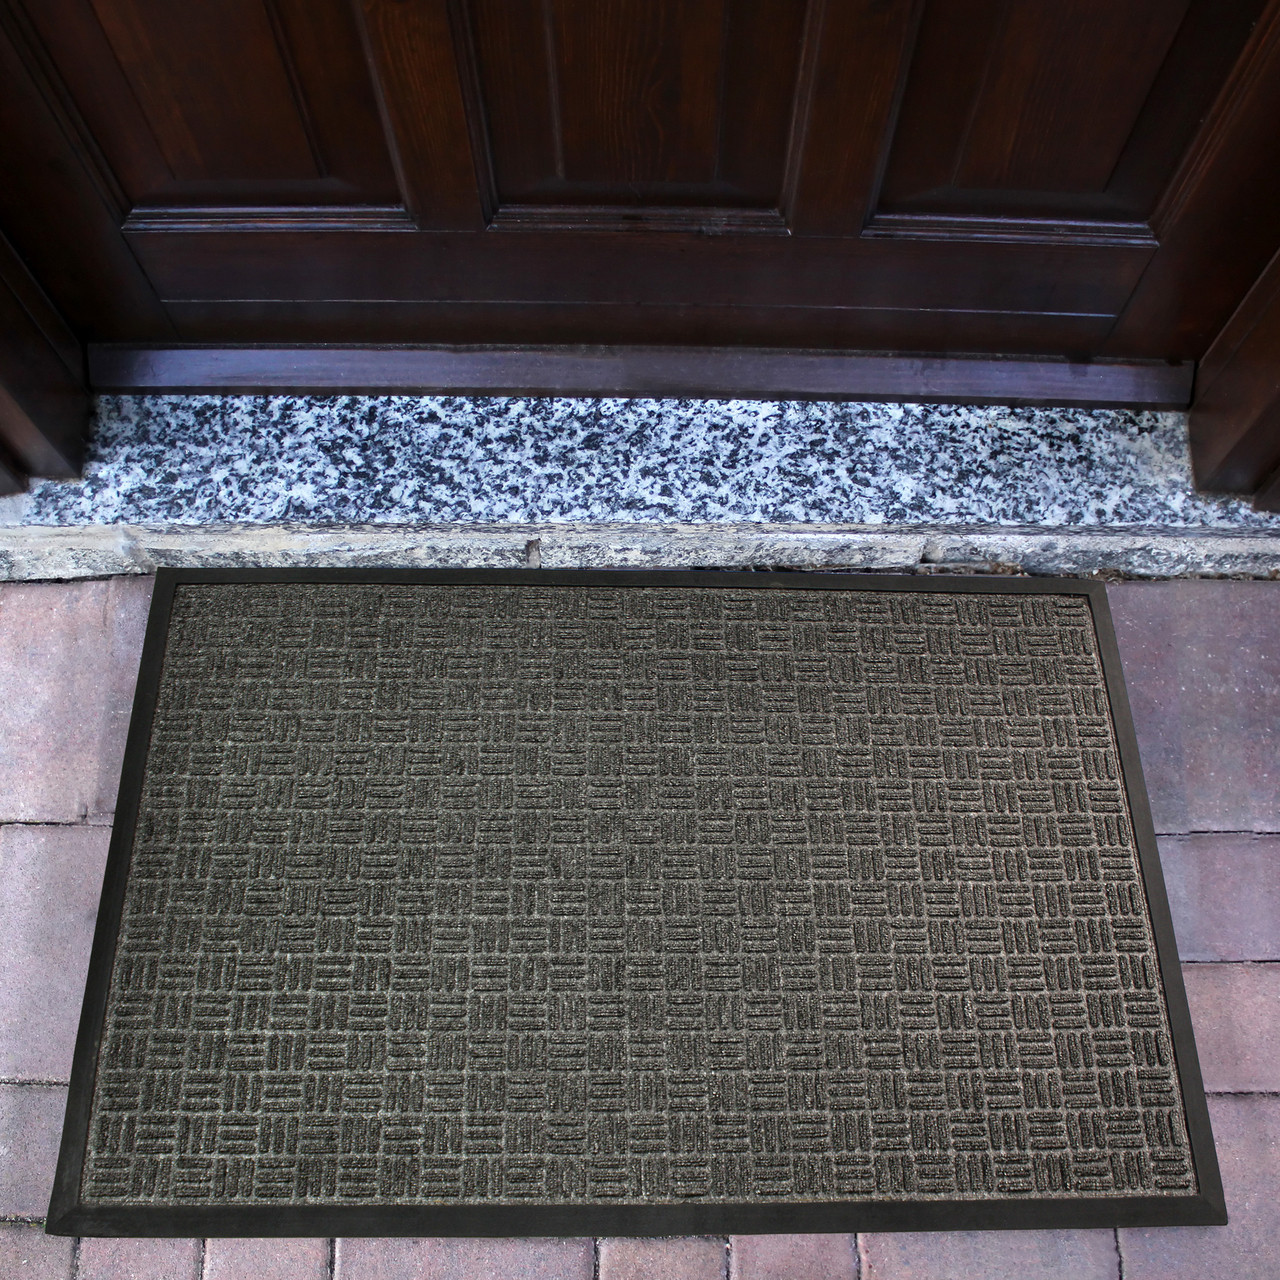 anti slide outdoor entrance door mats